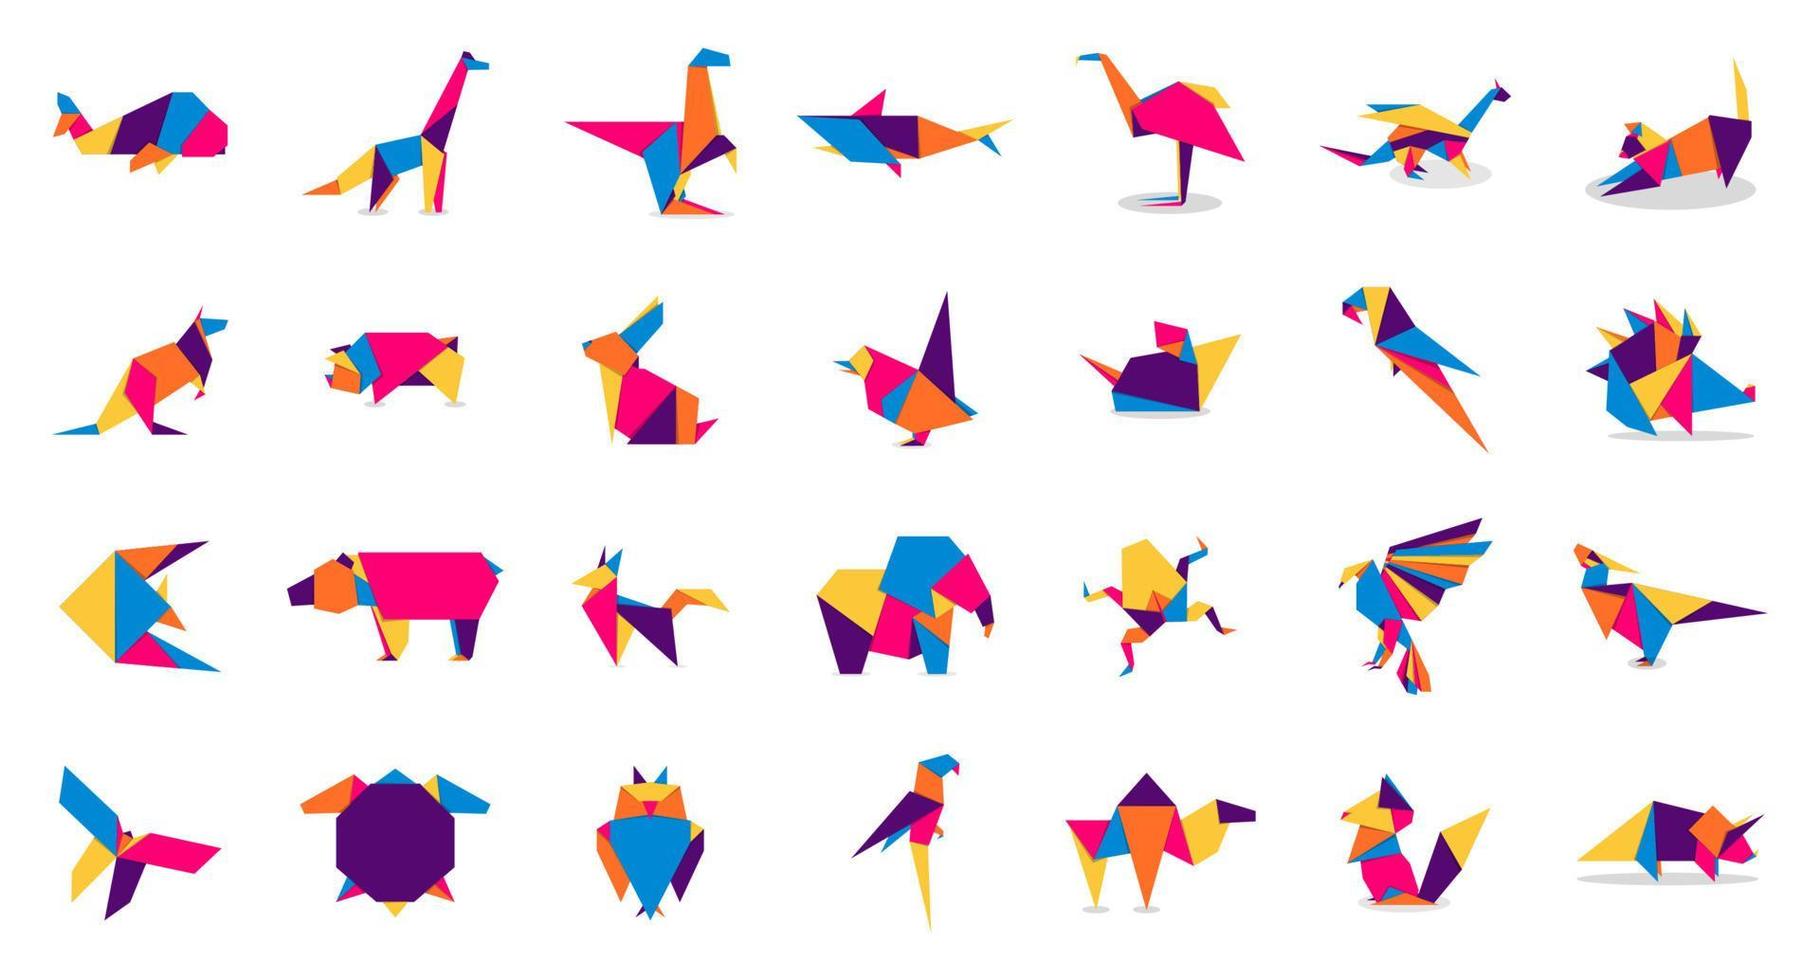 dieren origami collectie. dierlijke origami-vector. abstracte dieren logo ontwerp. dieren origami. vector illustratie